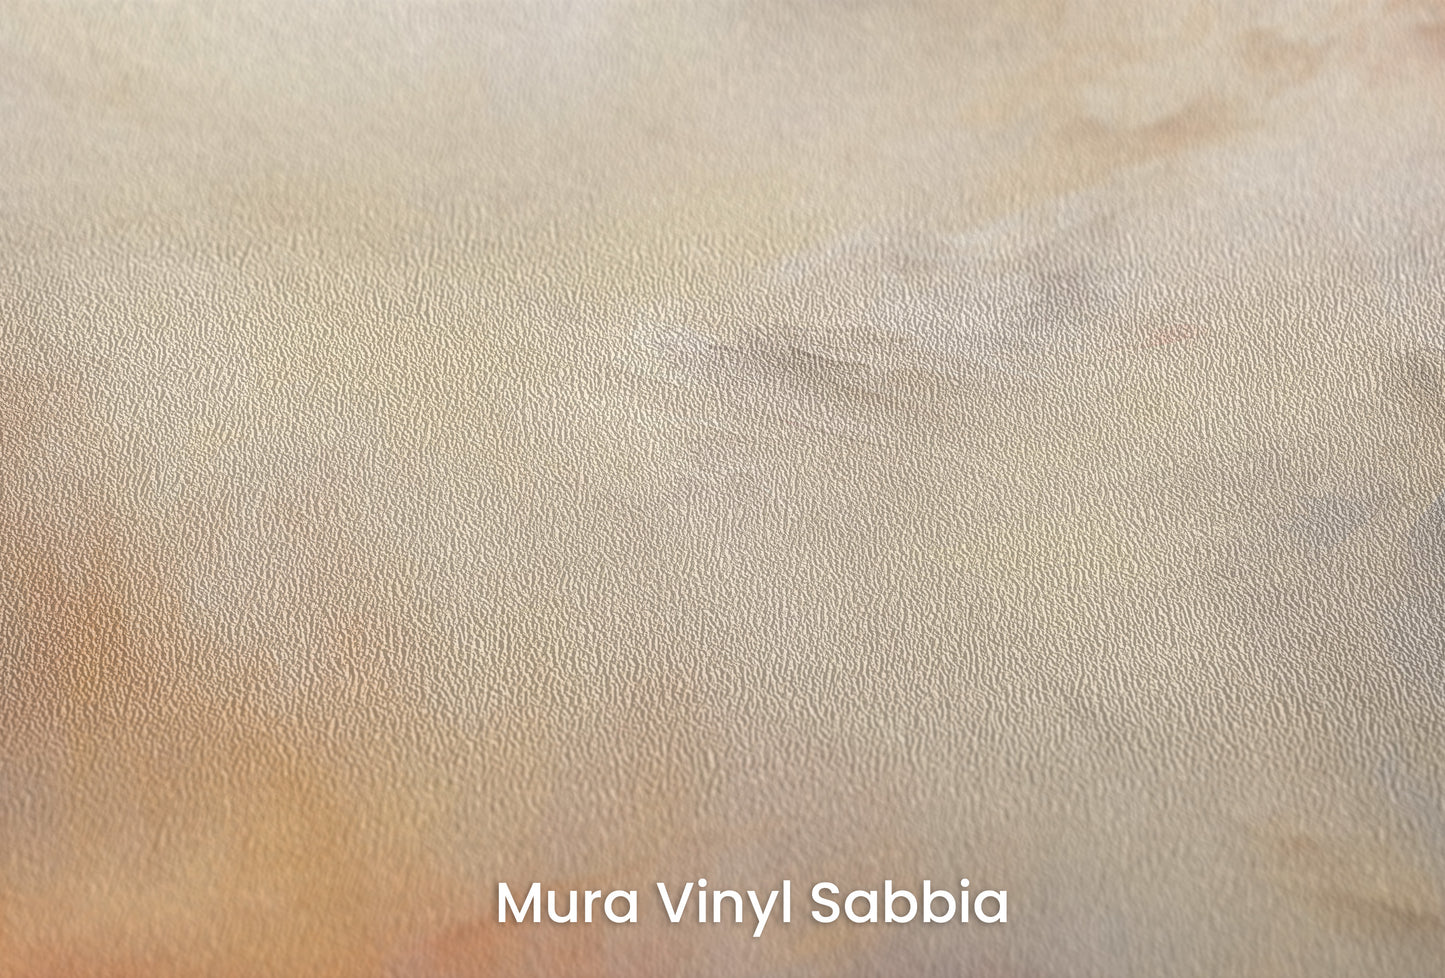 Zbliżenie na artystyczną fototapetę o nazwie FIRST LIGHT na podłożu Mura Vinyl Sabbia struktura grubego ziarna piasku.